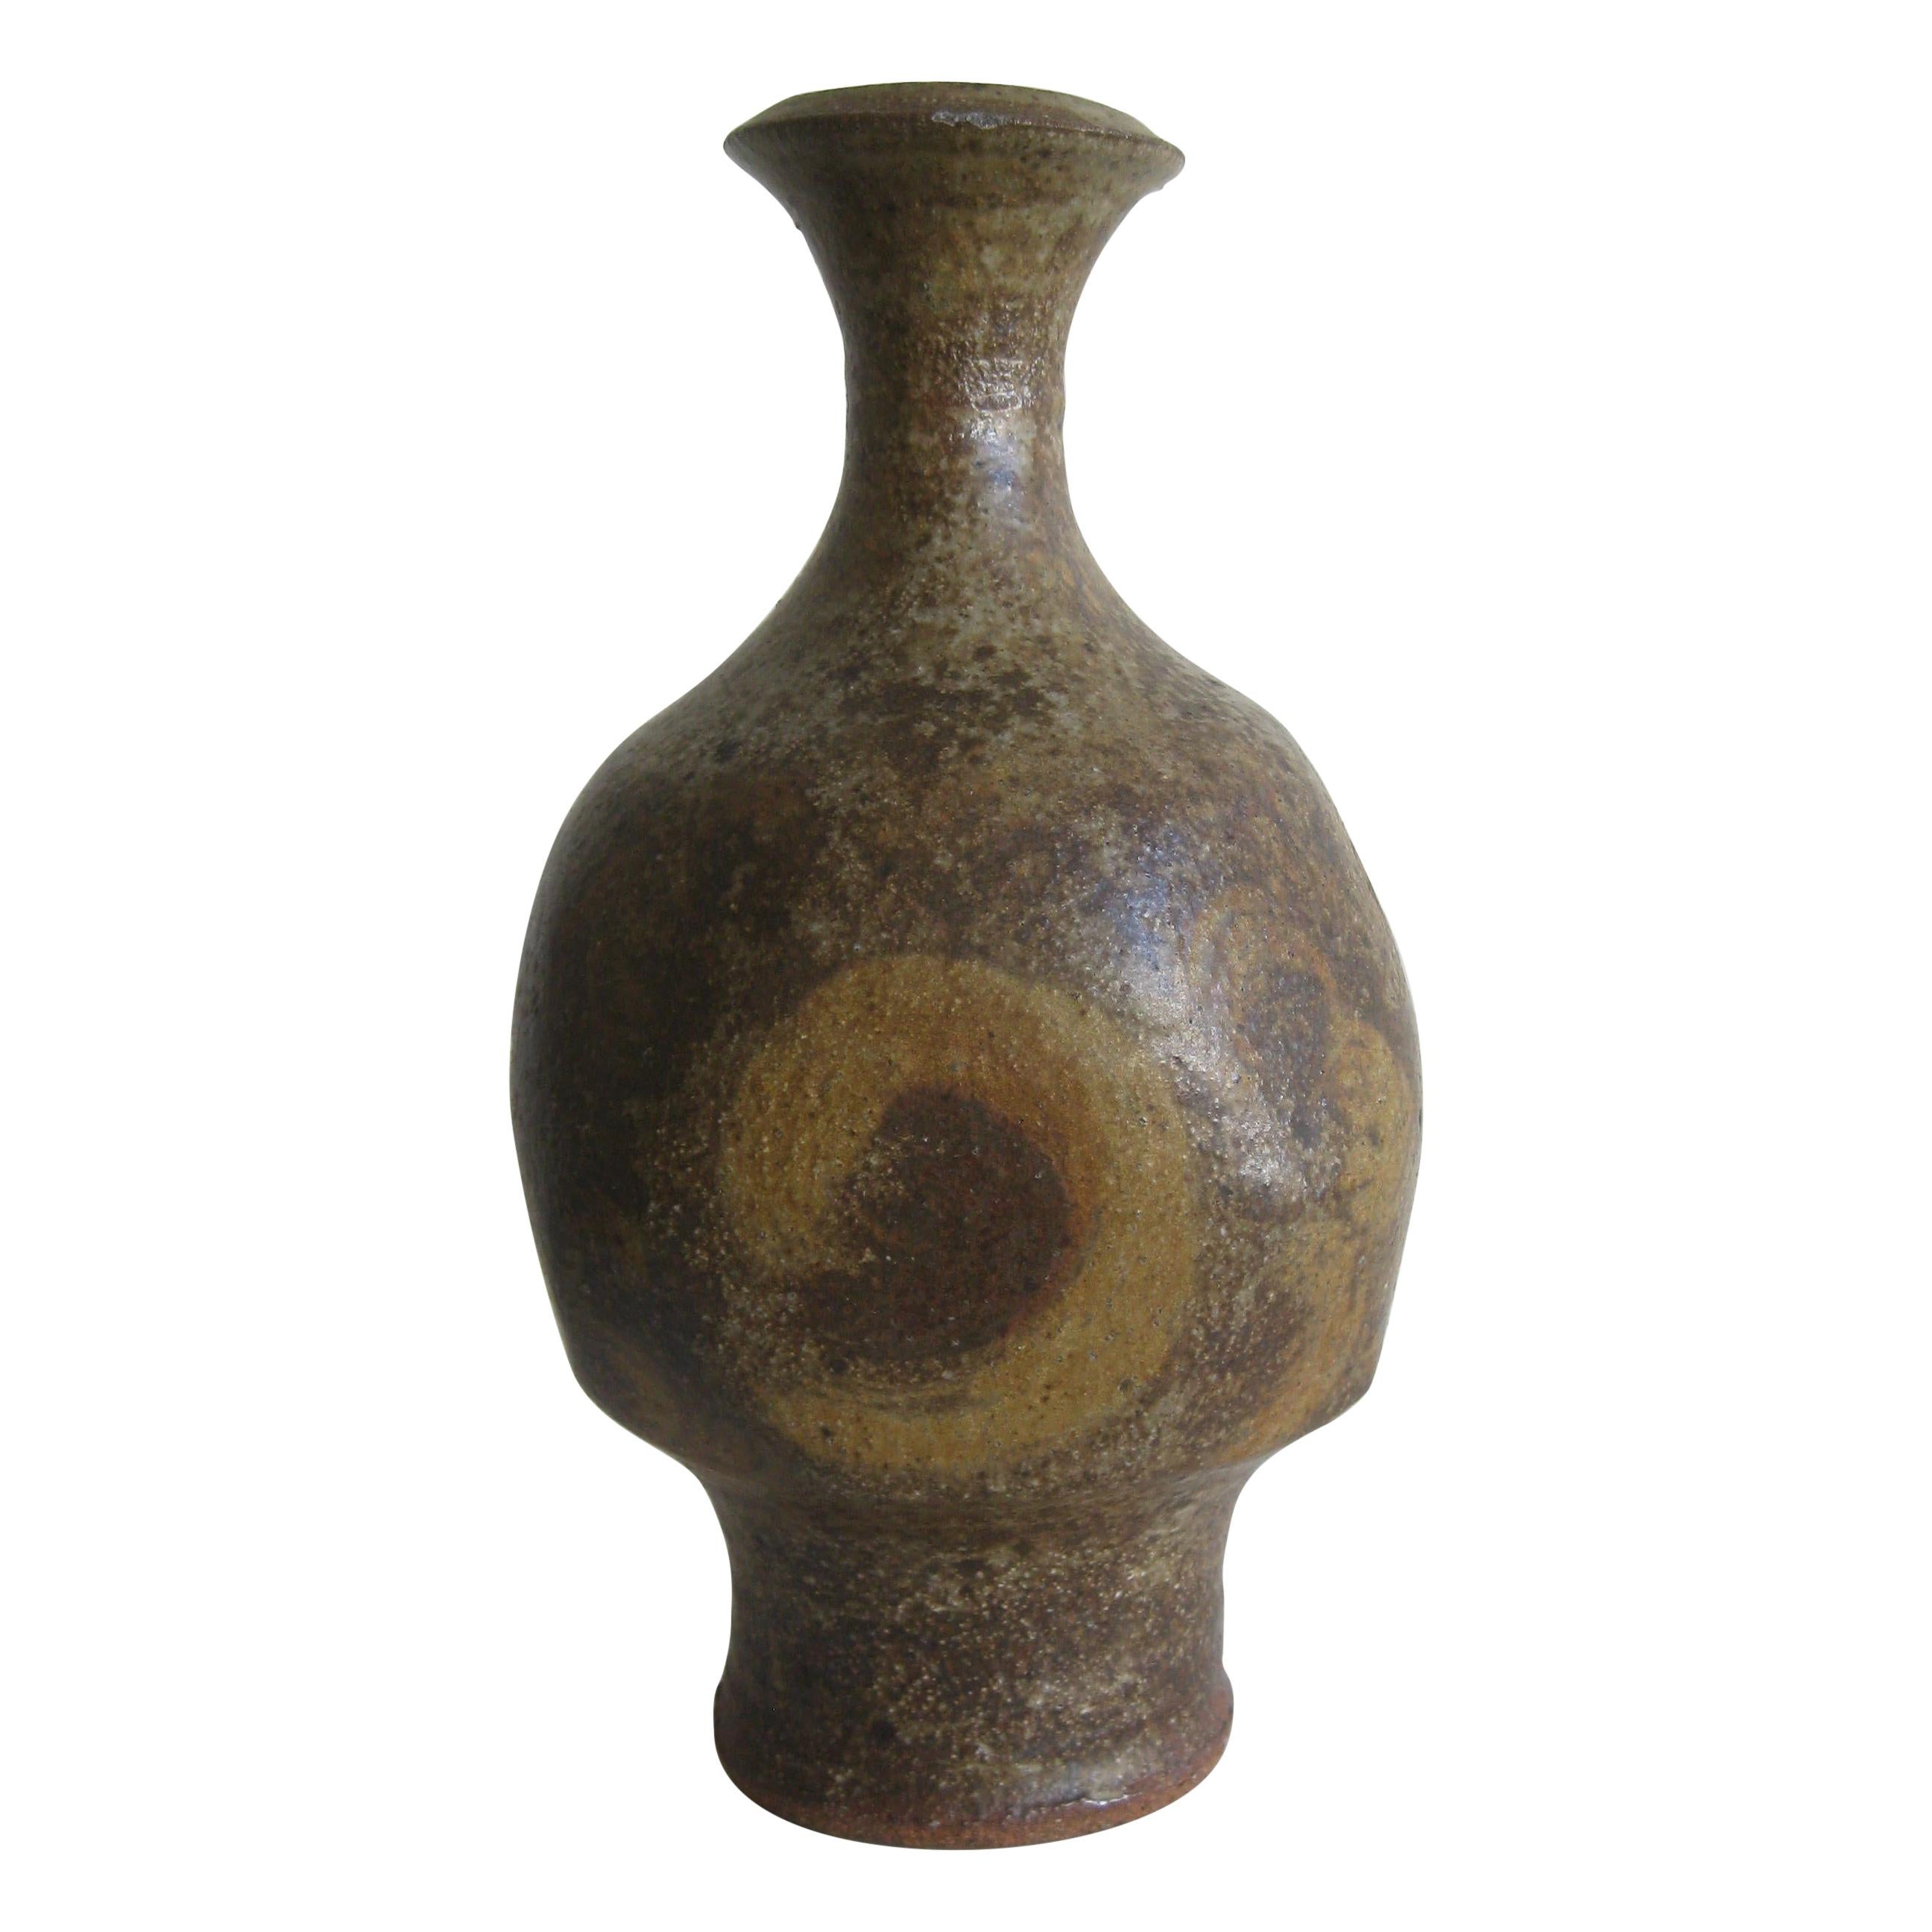 Robert Fournier British Studio Art Pottery Vase en grès moderniste Grand vase